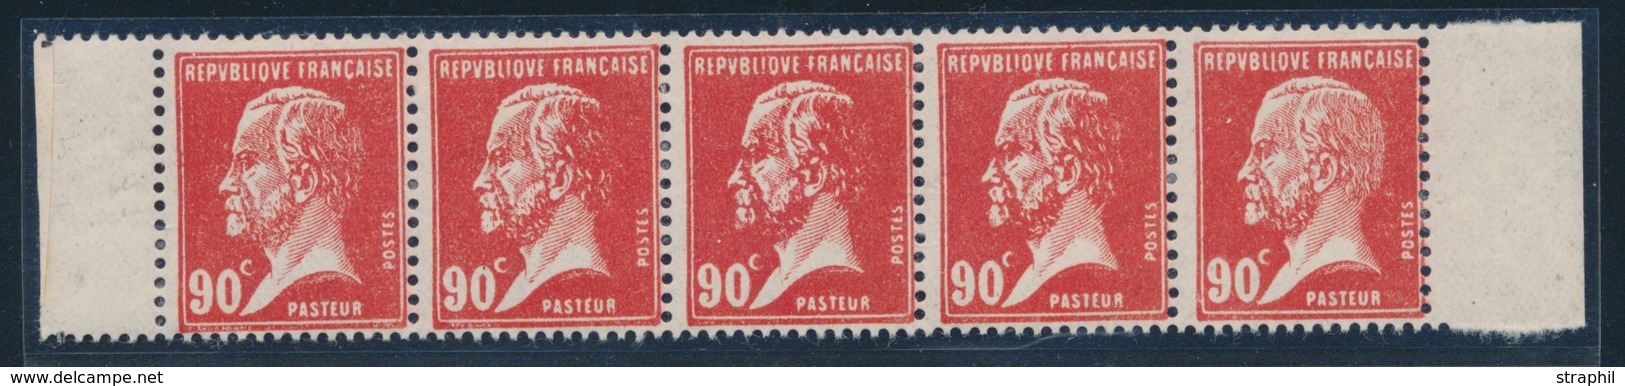 ** VARIETES - ** - N°178 - 90c Rouge - Tête De Nègre Ds Bde De 5 - TB - Unused Stamps